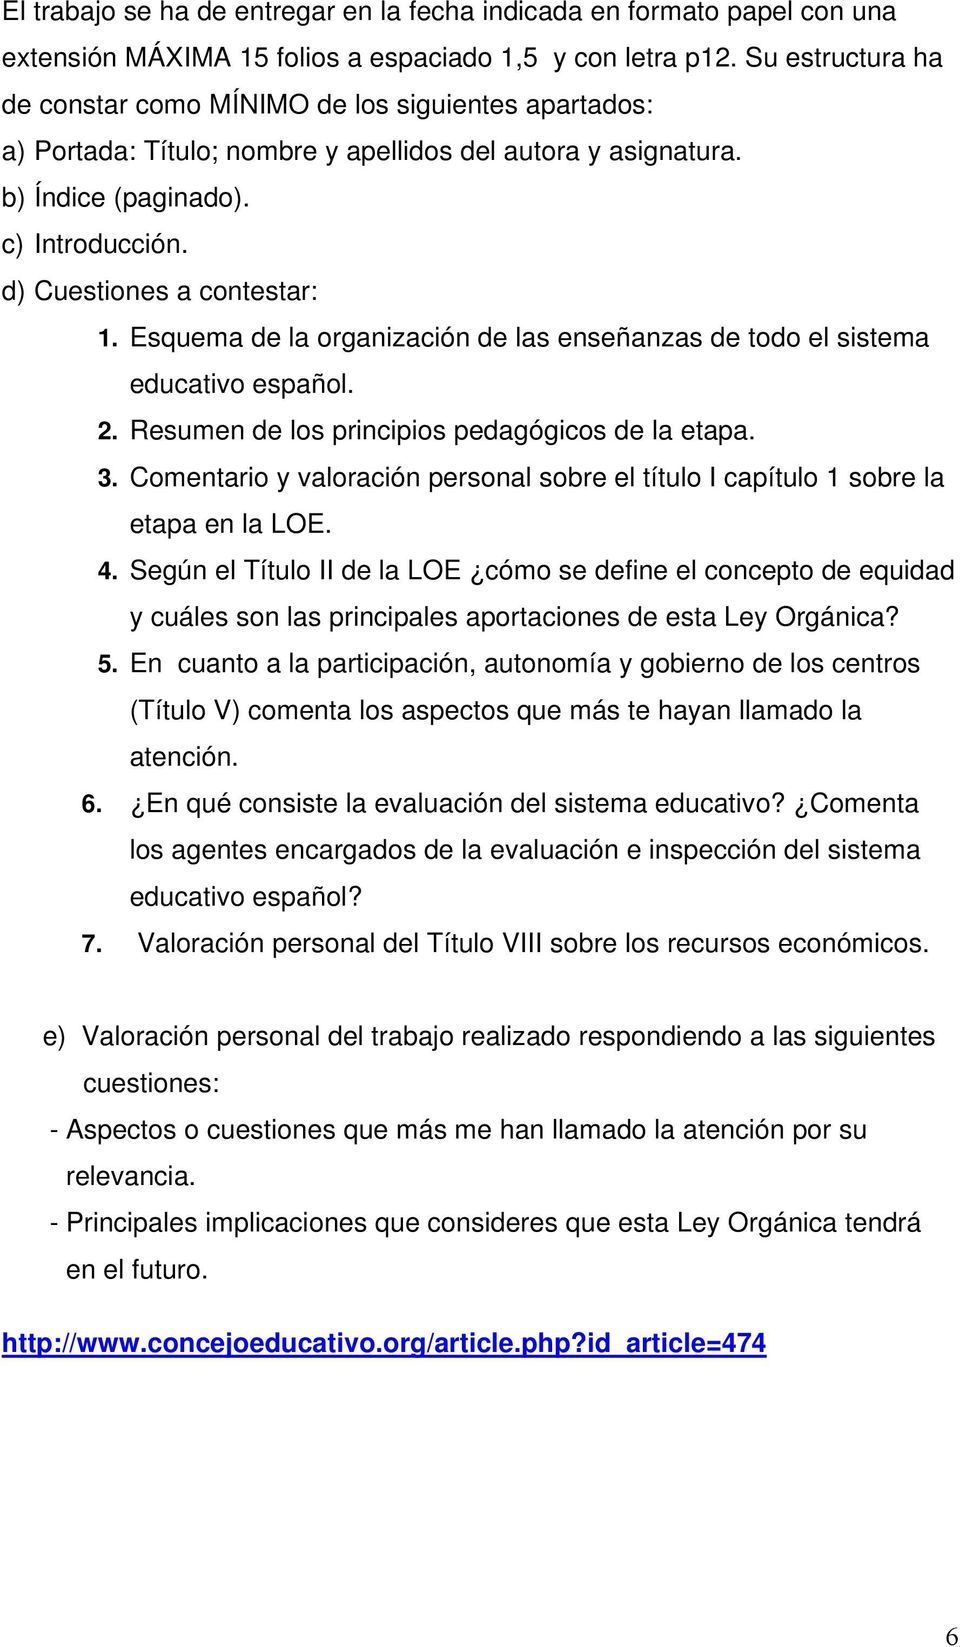 d) Cuestiones a contestar: 1. Esquema de la organización de las enseñanzas de todo el sistema educativo español. 2. Resumen de los principios pedagógicos de la etapa. 3.